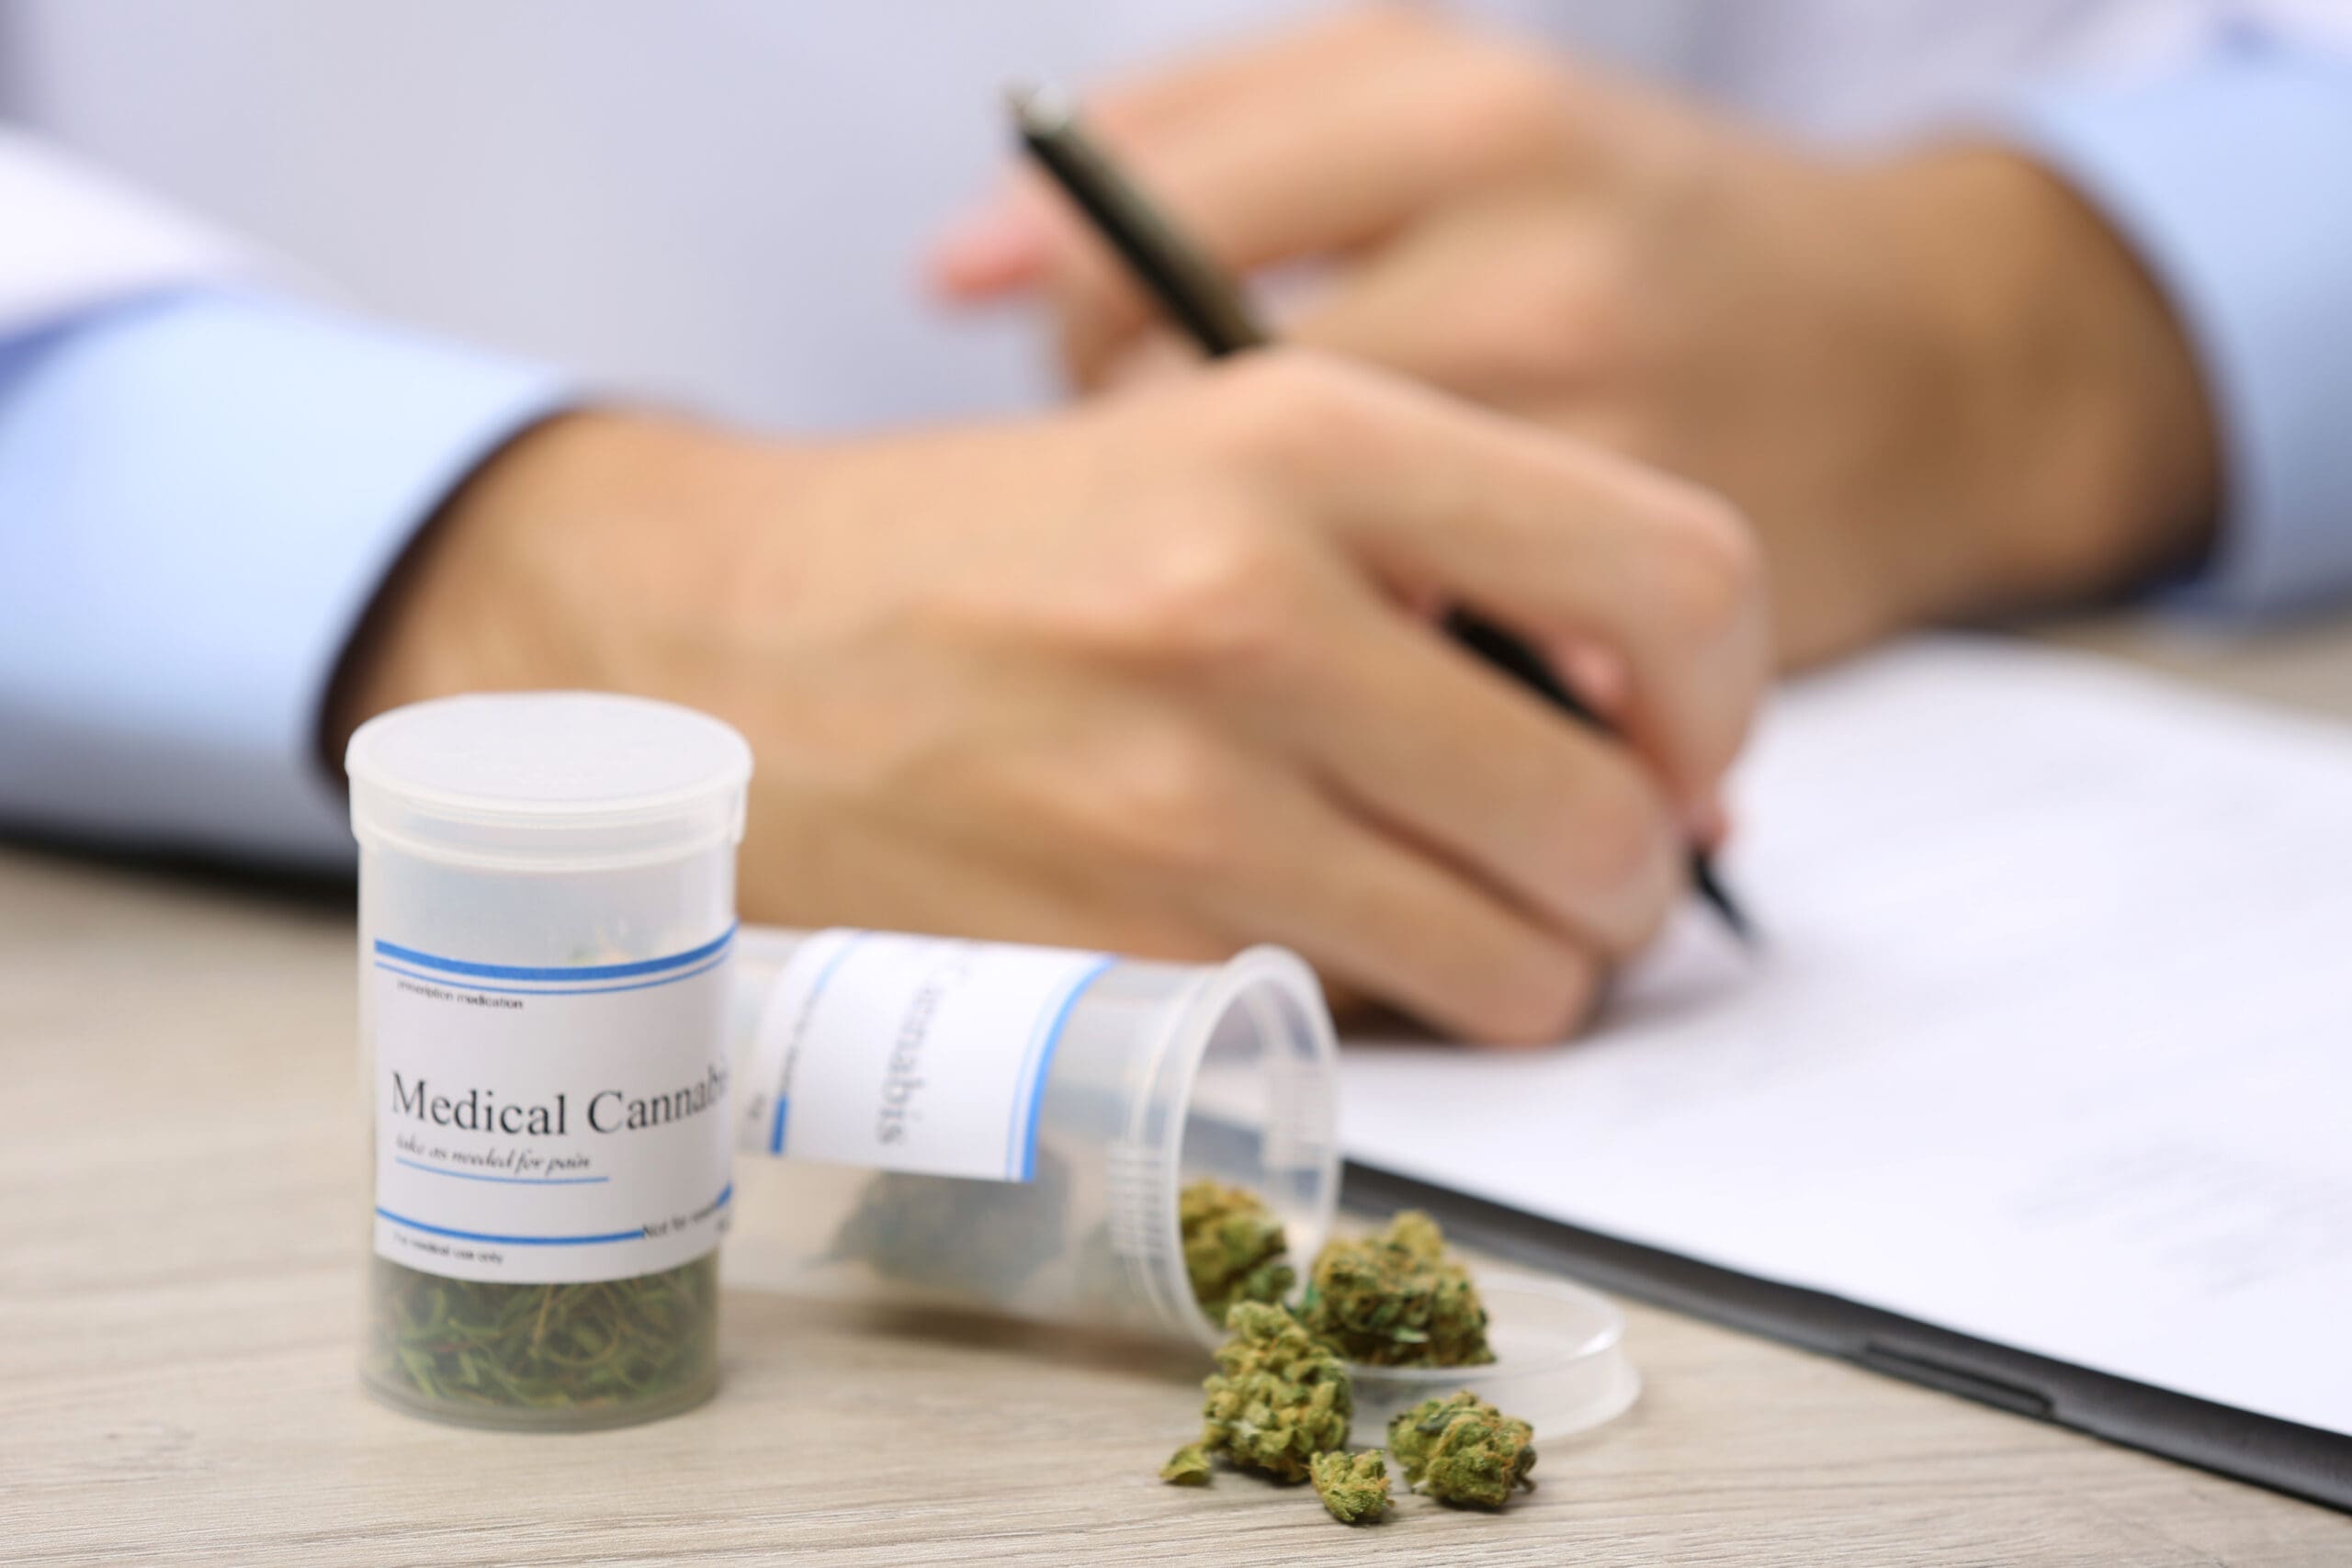 Trends in Medicinal Cannabis Prescription